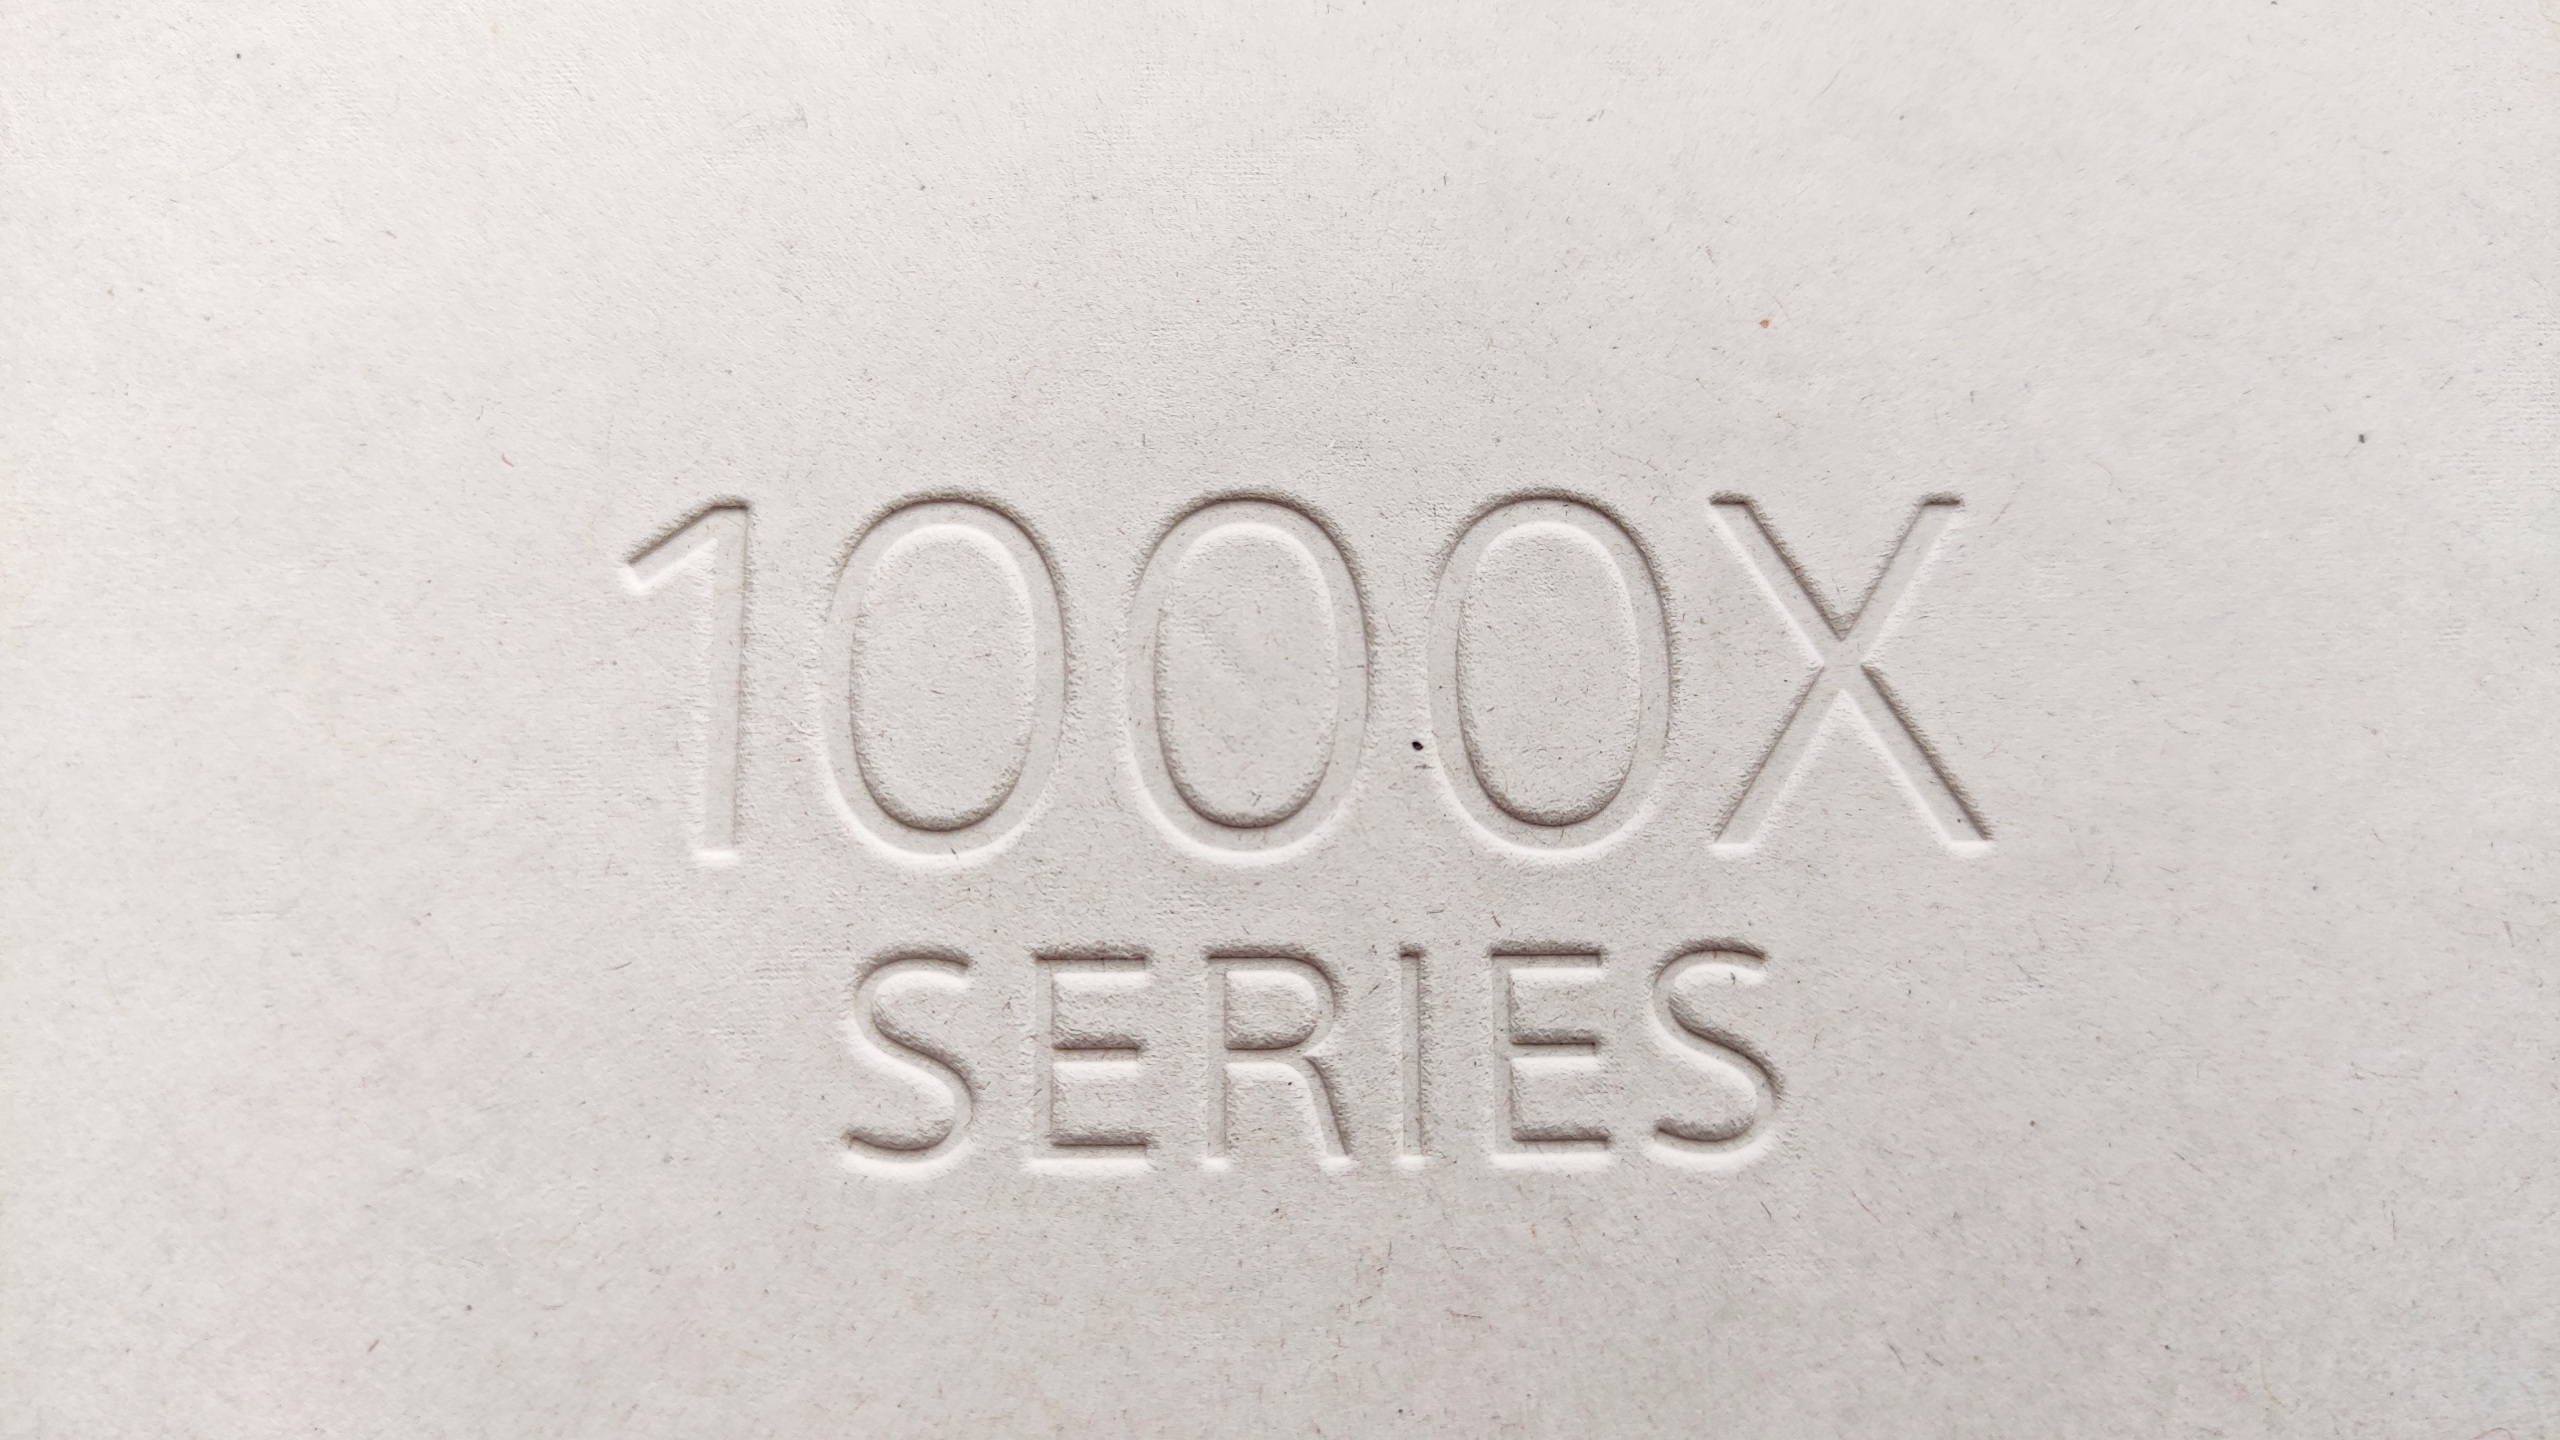 Sony 1000Xシリーズ